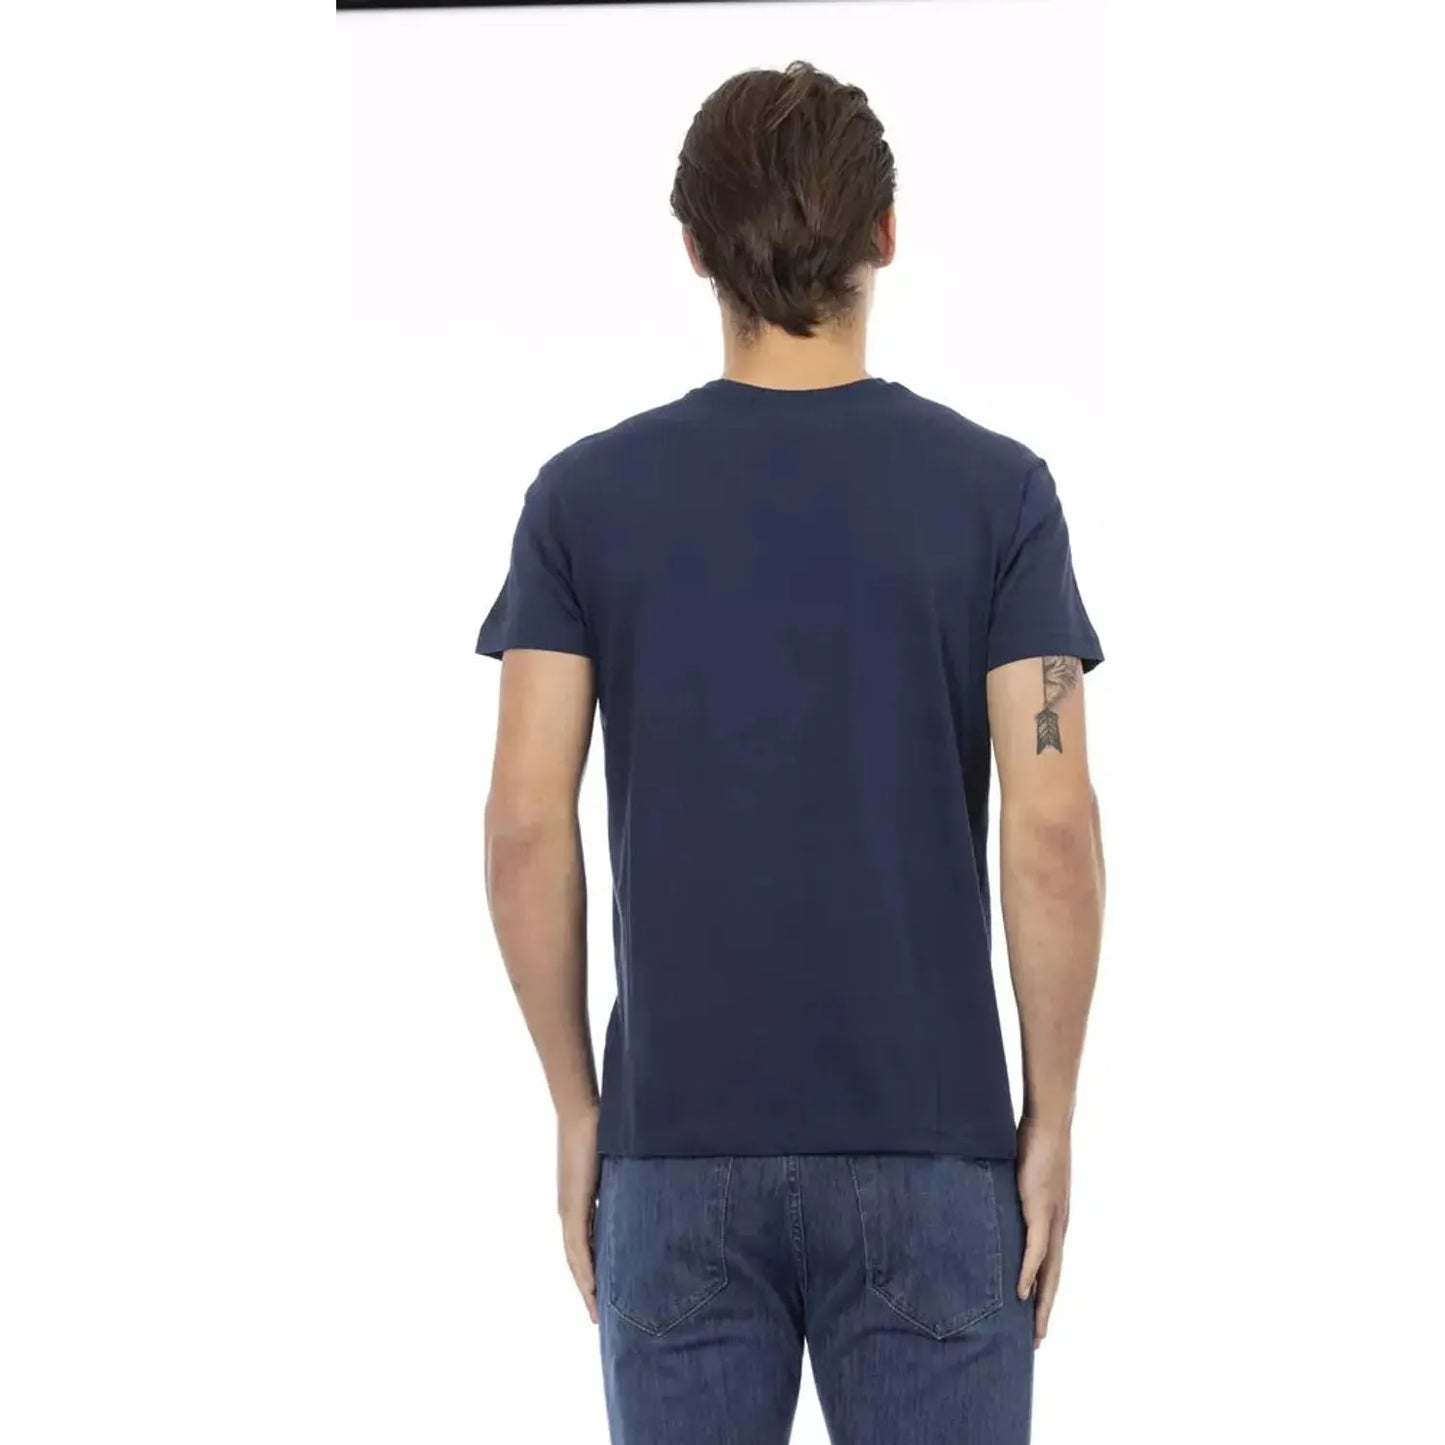 Trussardi Action V-Neck Short Sleeve Stylish Blue Tee blue-cotton-t-shirt-65